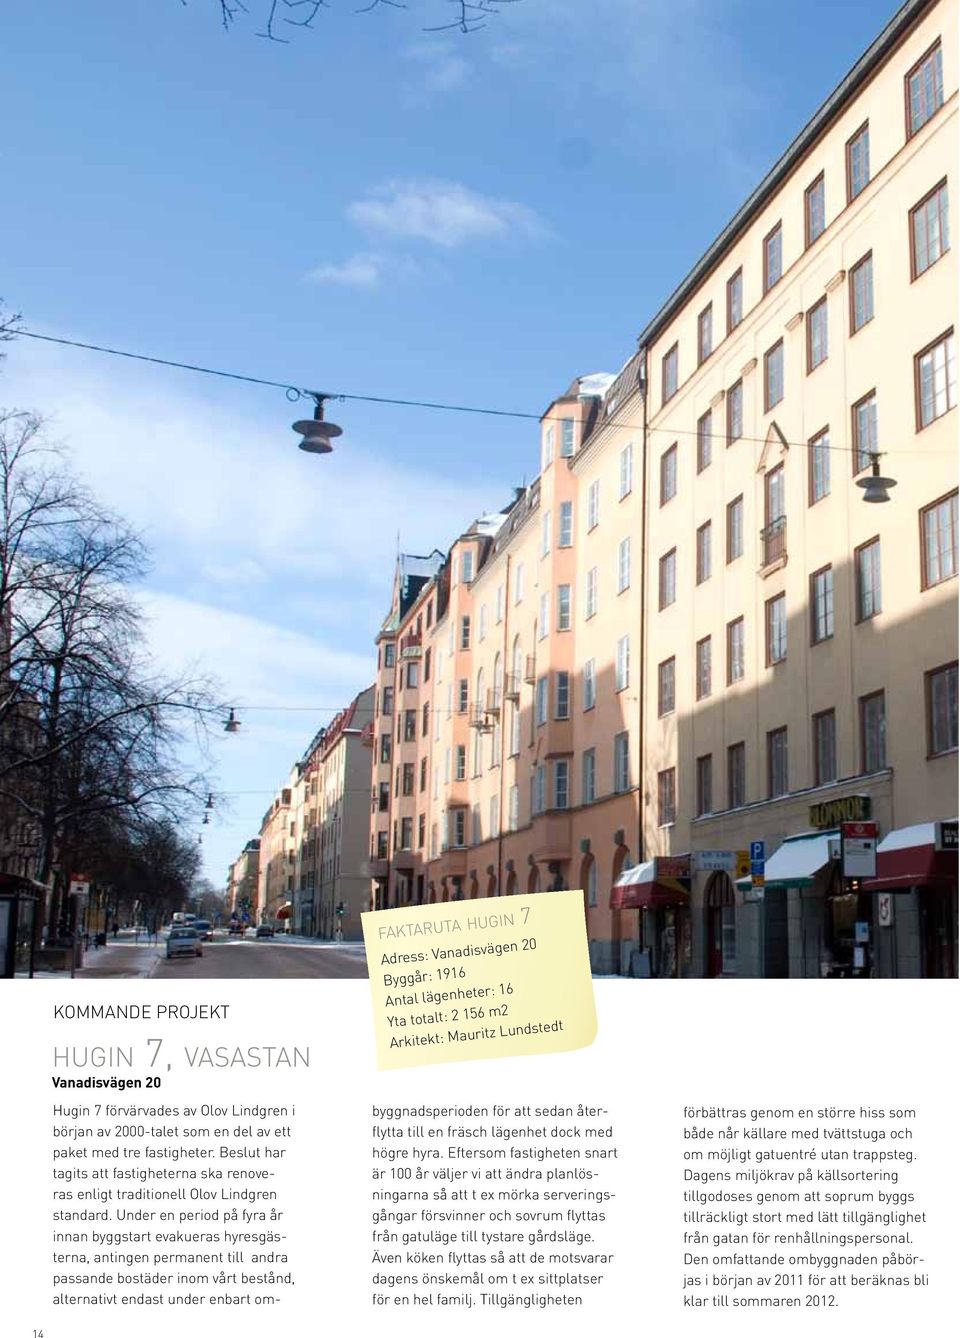 Olov Lindgren i början av 2-talet som en del av ett paket med tre fastigheter. Beslut har tagits att fastigheterna ska renoveras enligt traditionell Olov Lindgren standard.